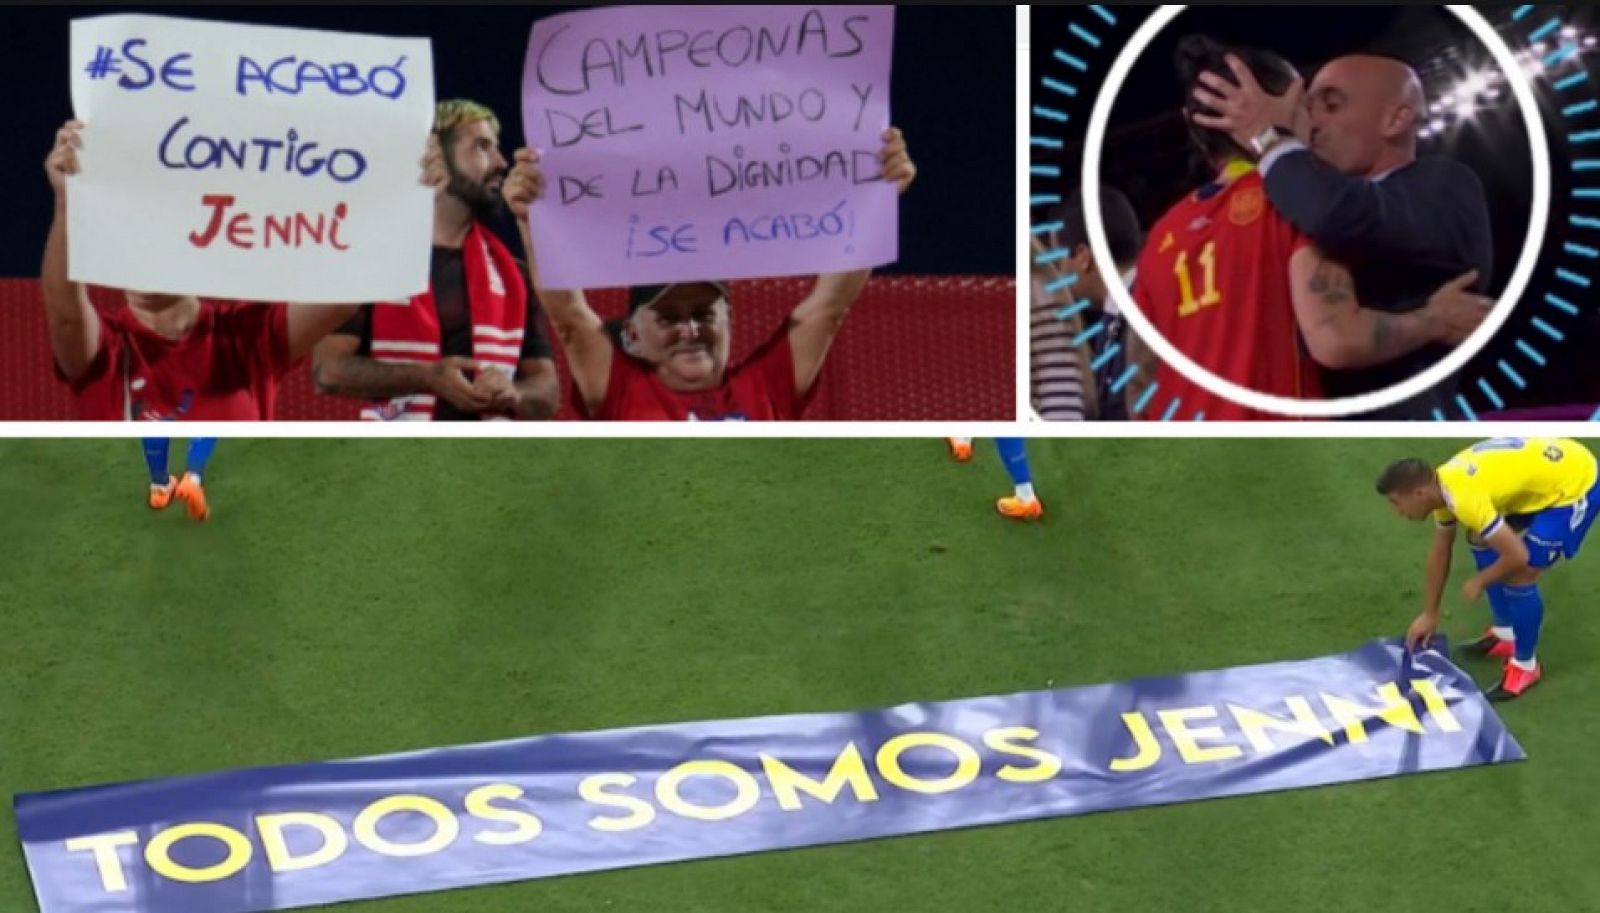 De campeonas del mundo al #SeAcabó, la semana que ha cambiado el fútbol español